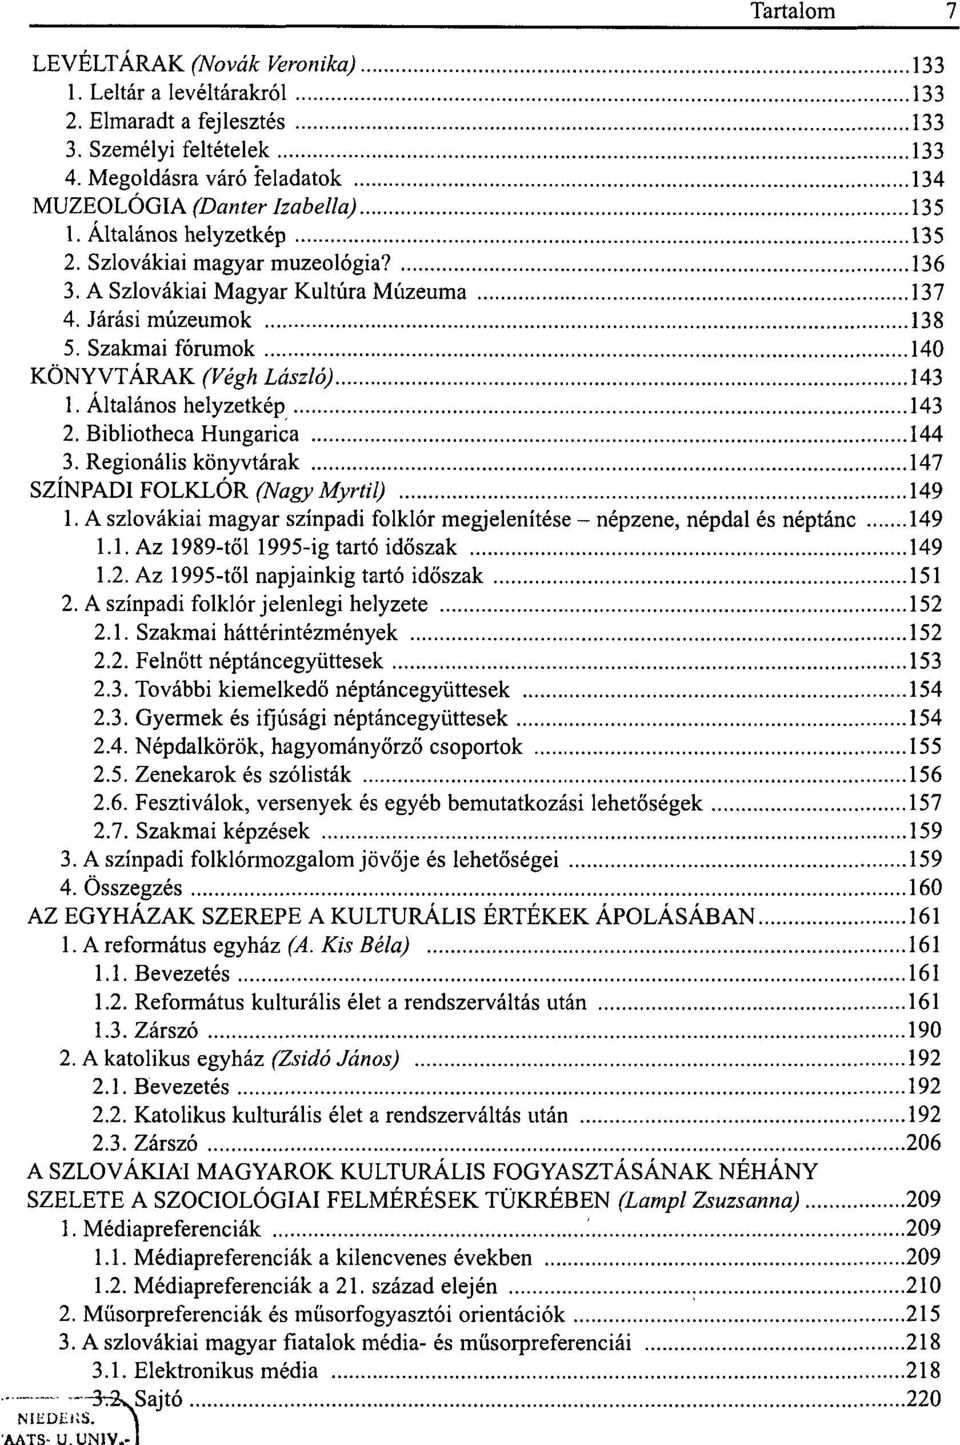 Szakmai fórumok 140 KÖNYVTÁRAK (Végh László) 143 1. Általános helyzetkép 143 2. Bibliotheca Hungarica 144 3. Regionális könyvtárak 147 SZÍNPADI FOLKLÓR (Nagy Myrtil) 149 1.